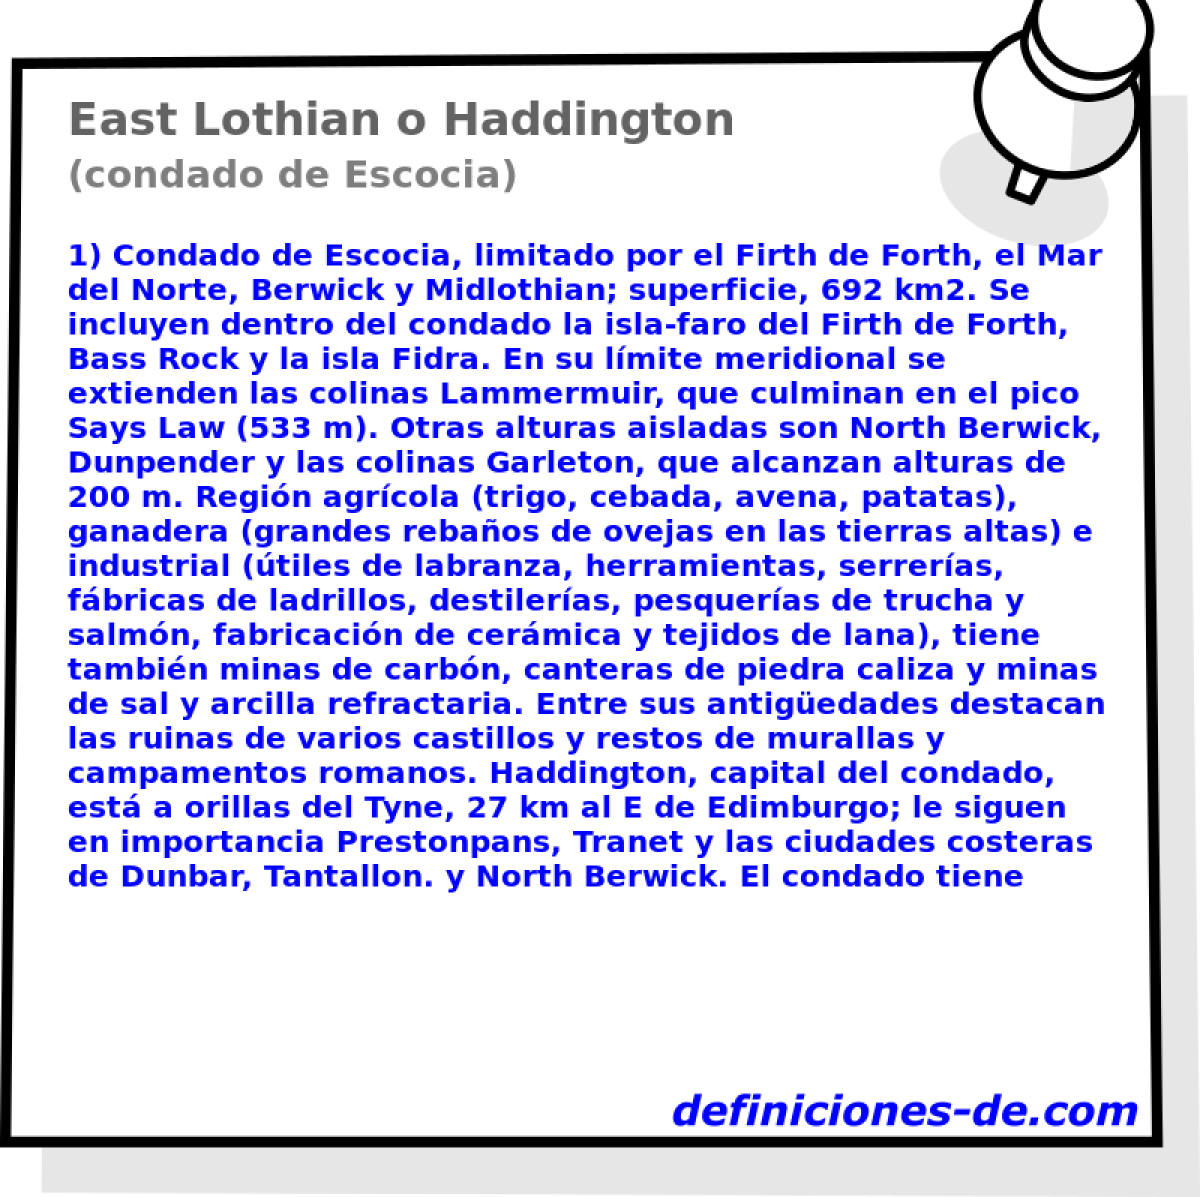 East Lothian o Haddington (condado de Escocia)